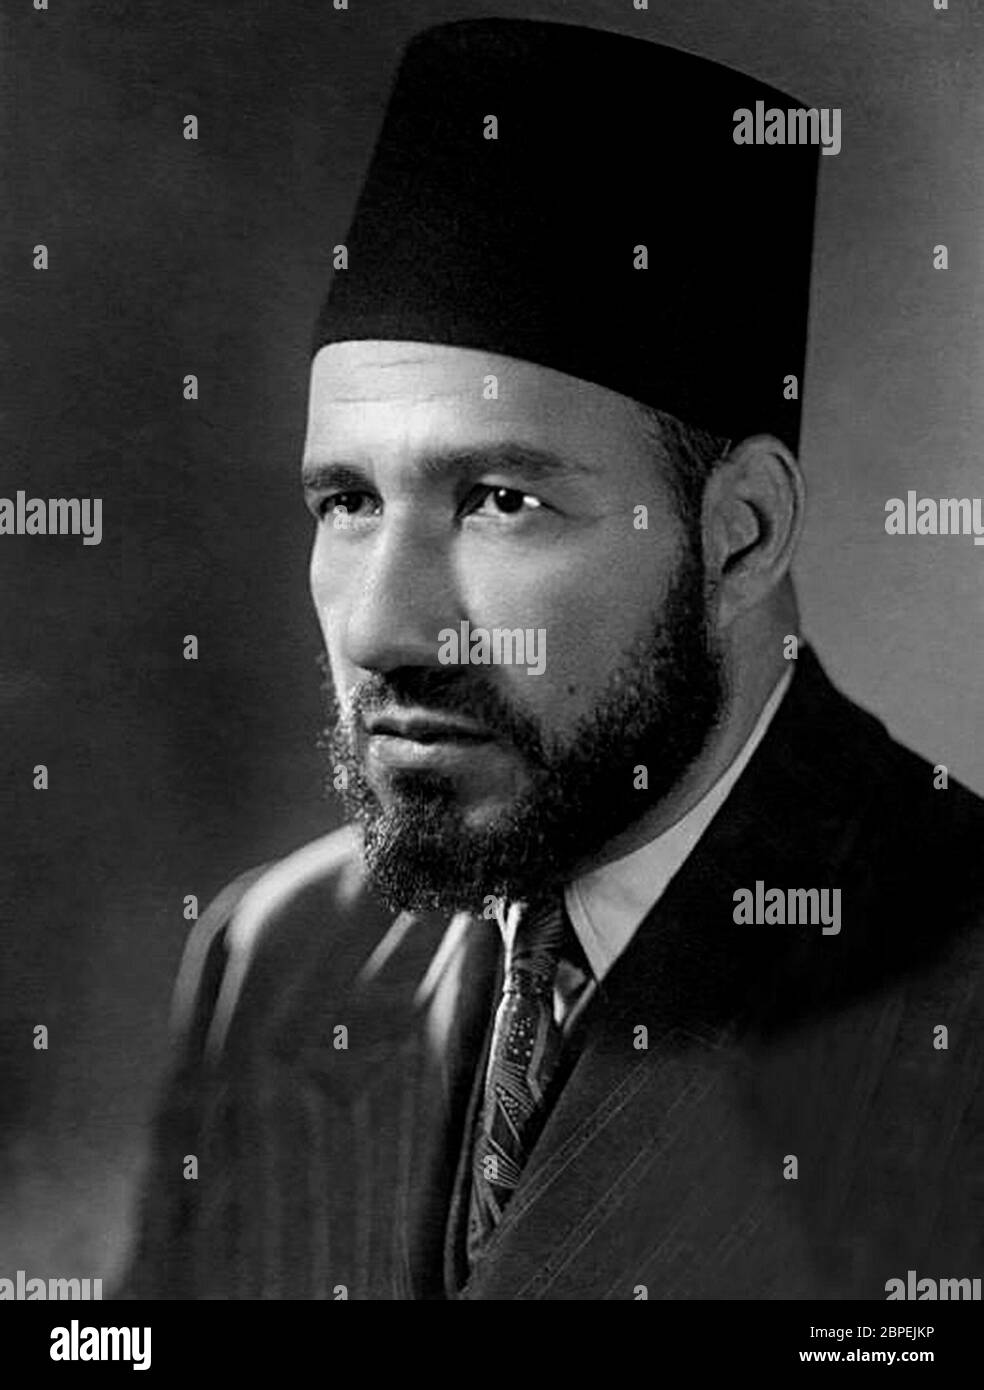 Imam hassan Banque d'images noir et blanc - Alamy